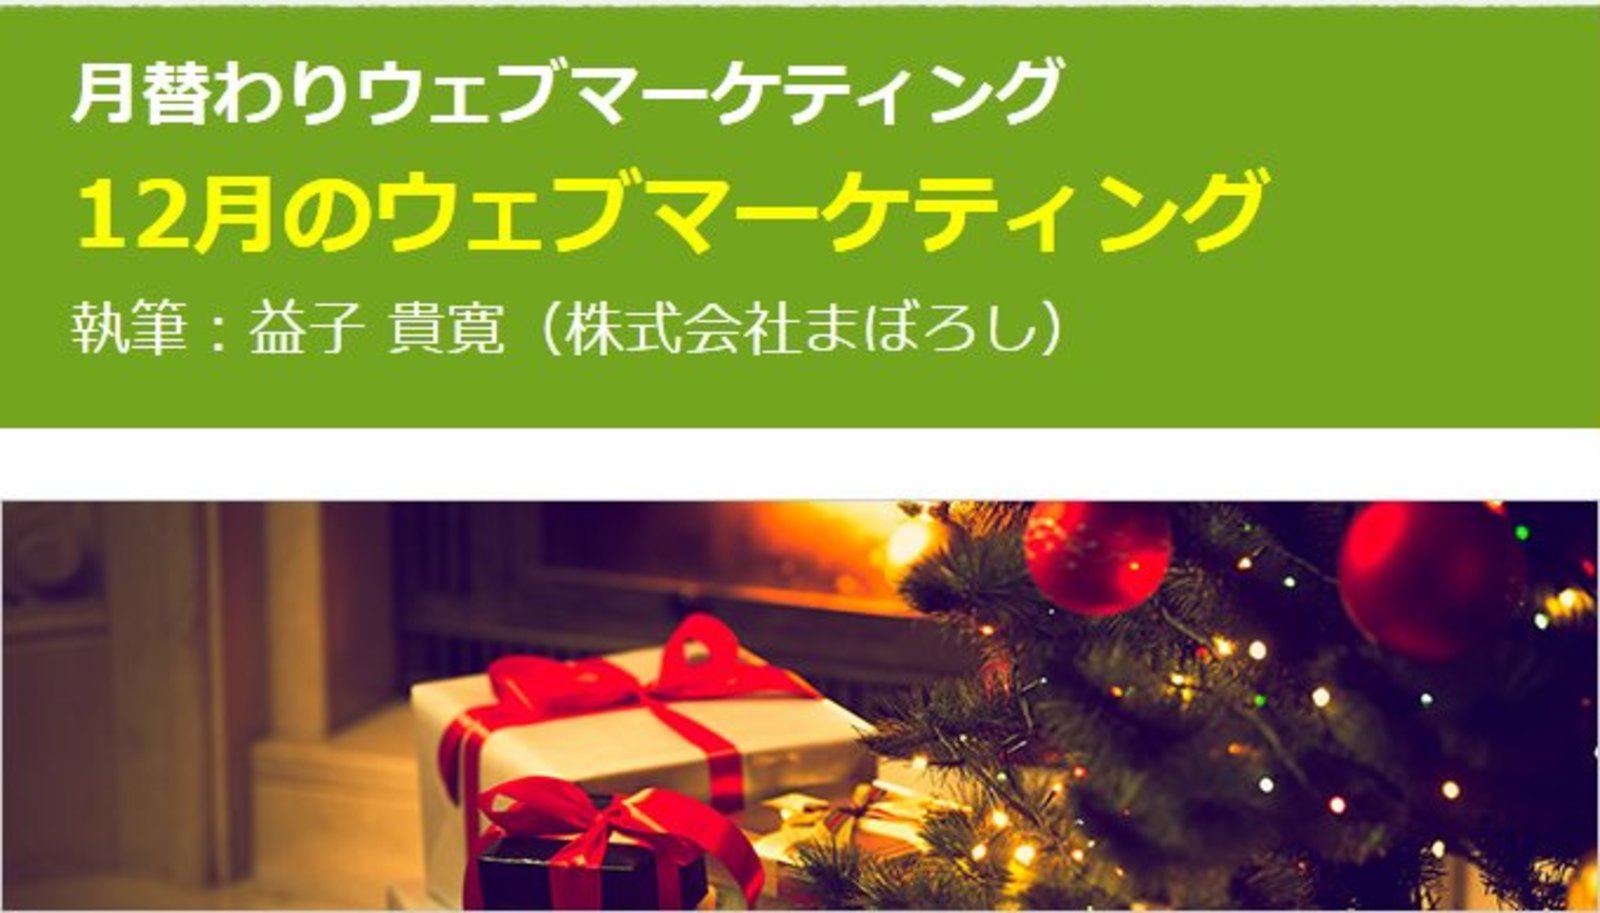 12月のウェブマーケティング アイデア帳 年末年始 クリスマス 冬のボーナス 忘年会 など 月替わりウェブマーケティング 全12回 Web担当者forum